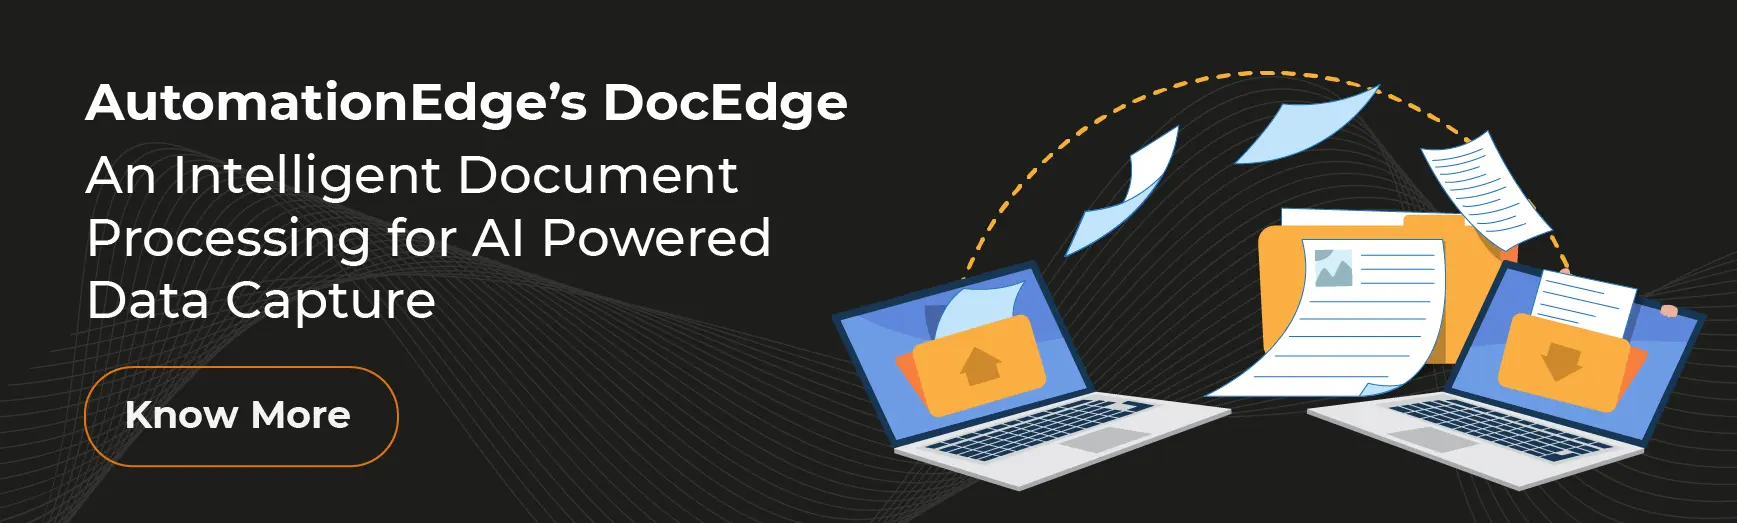 AutomationEdge's DocEdge